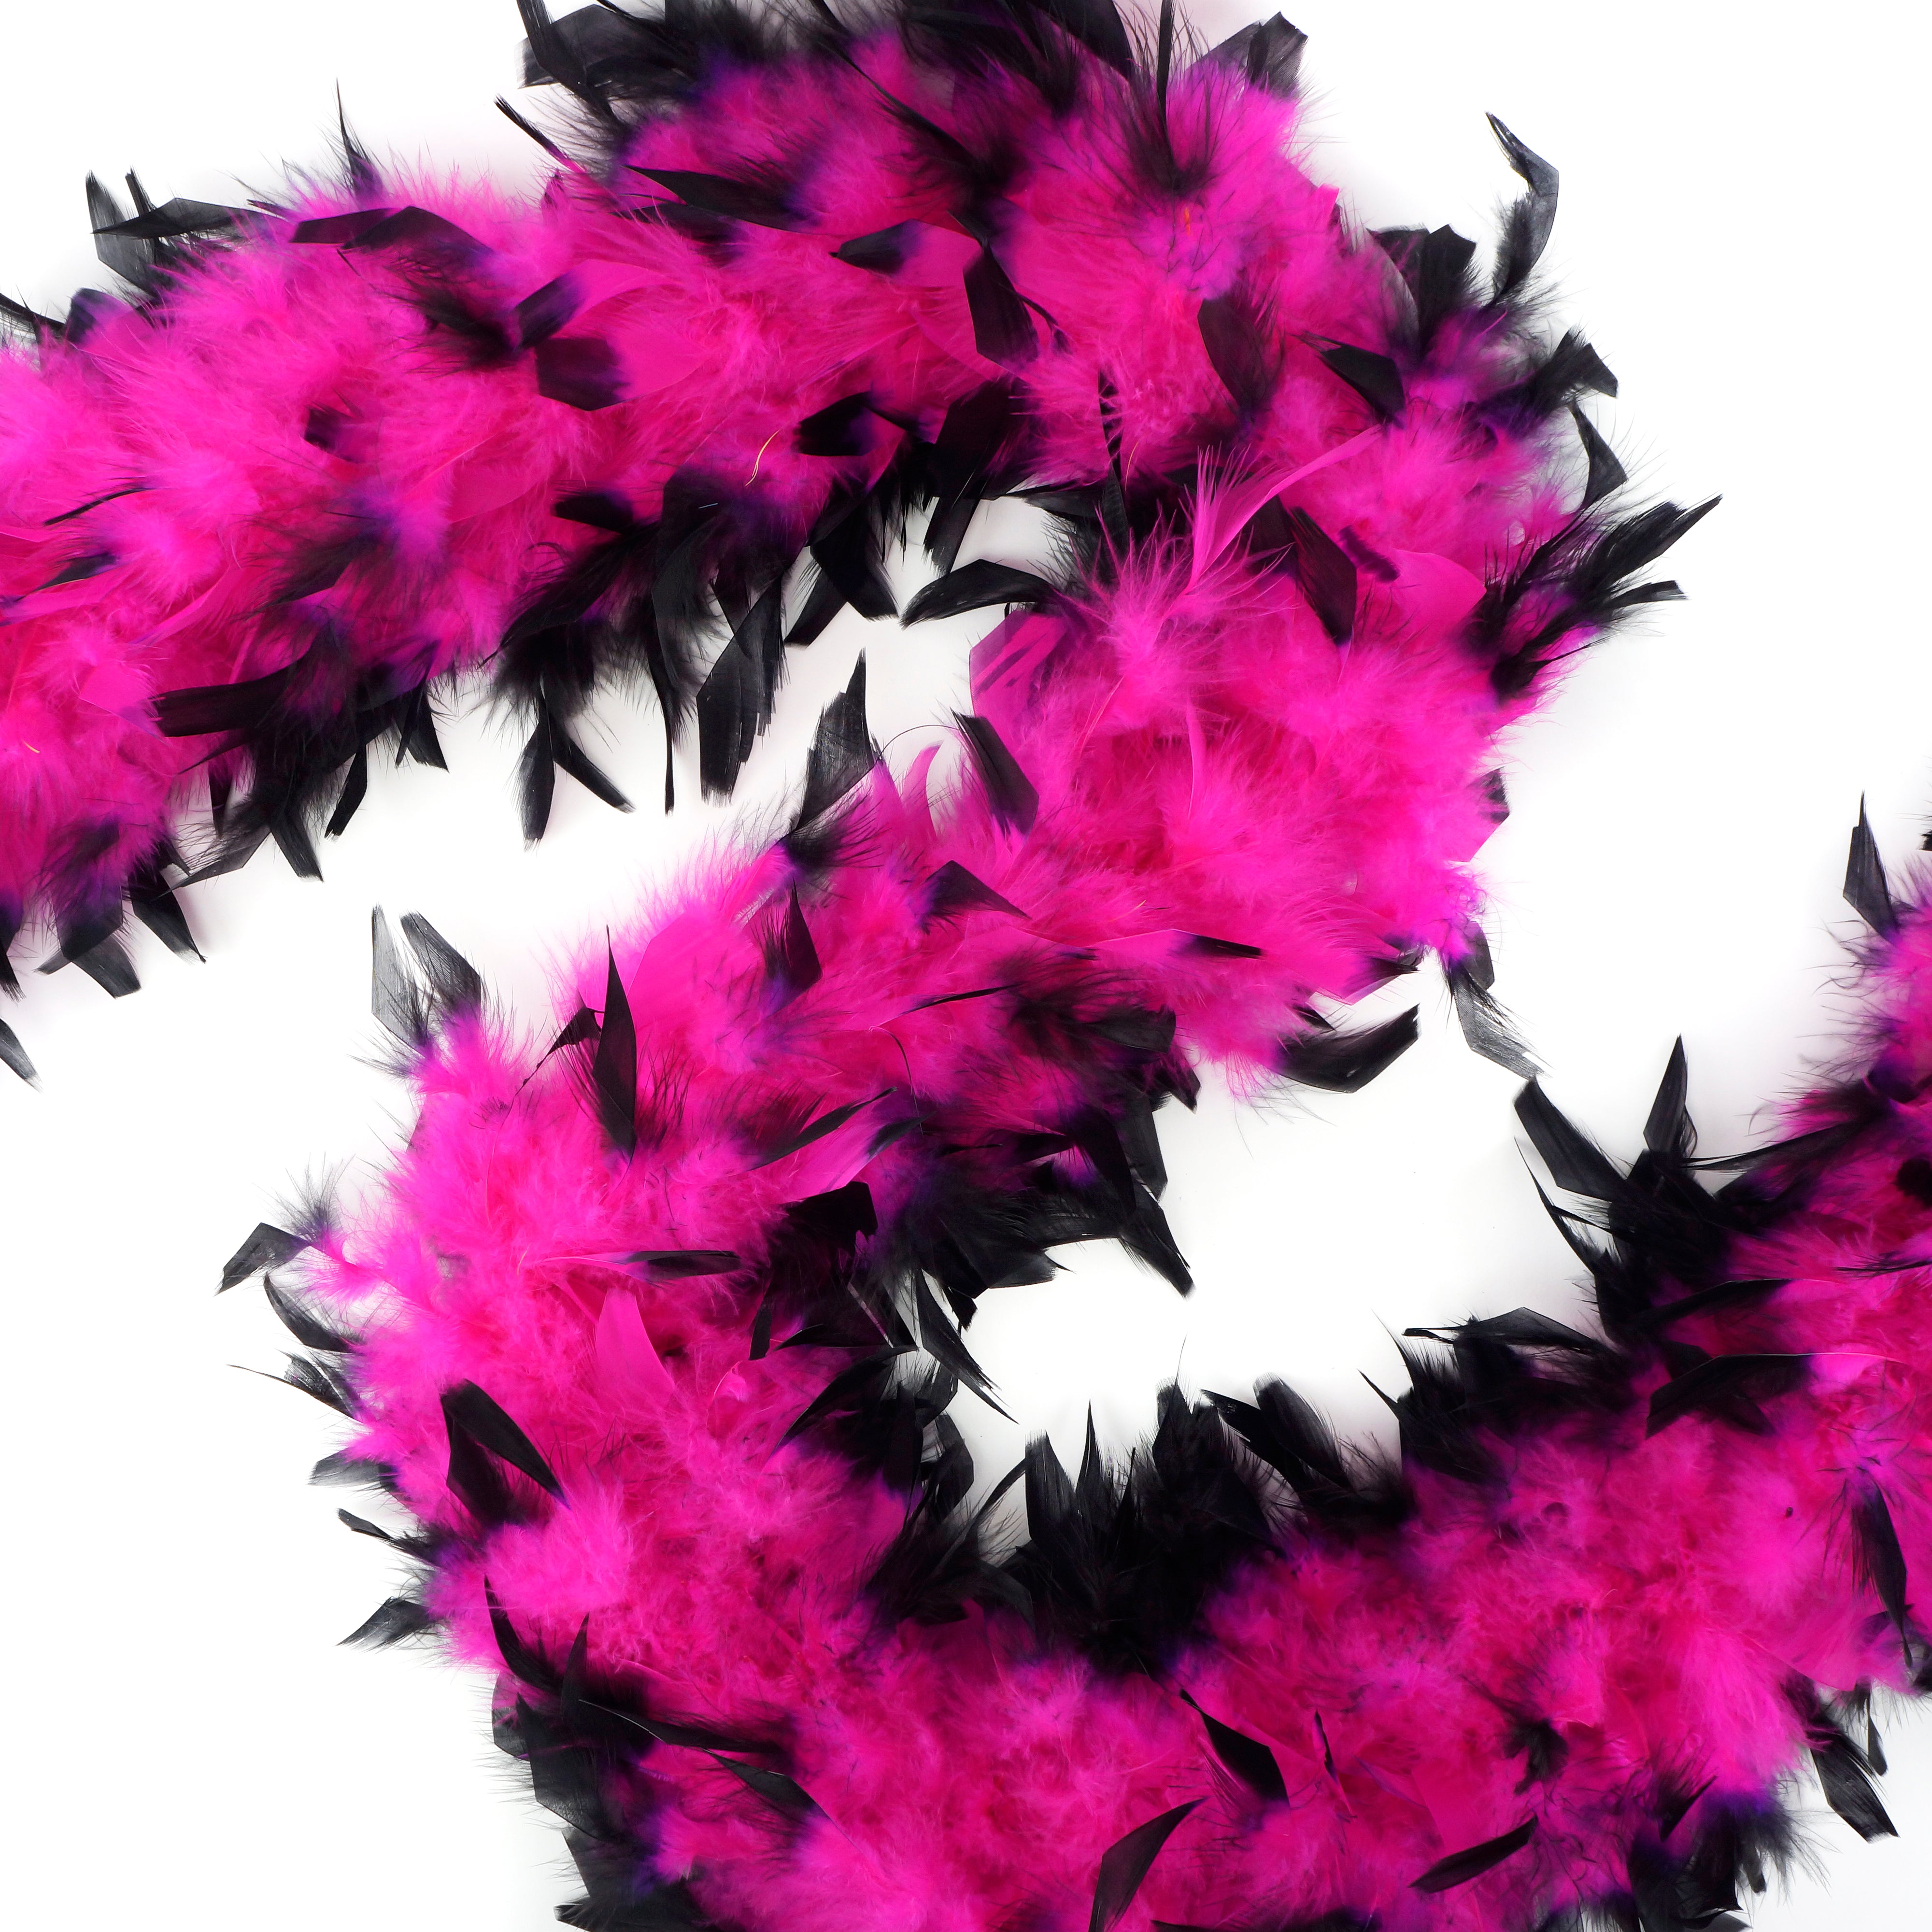 Zucker Feather Products Chandelle Medium Weight Boa with Lurex Pink